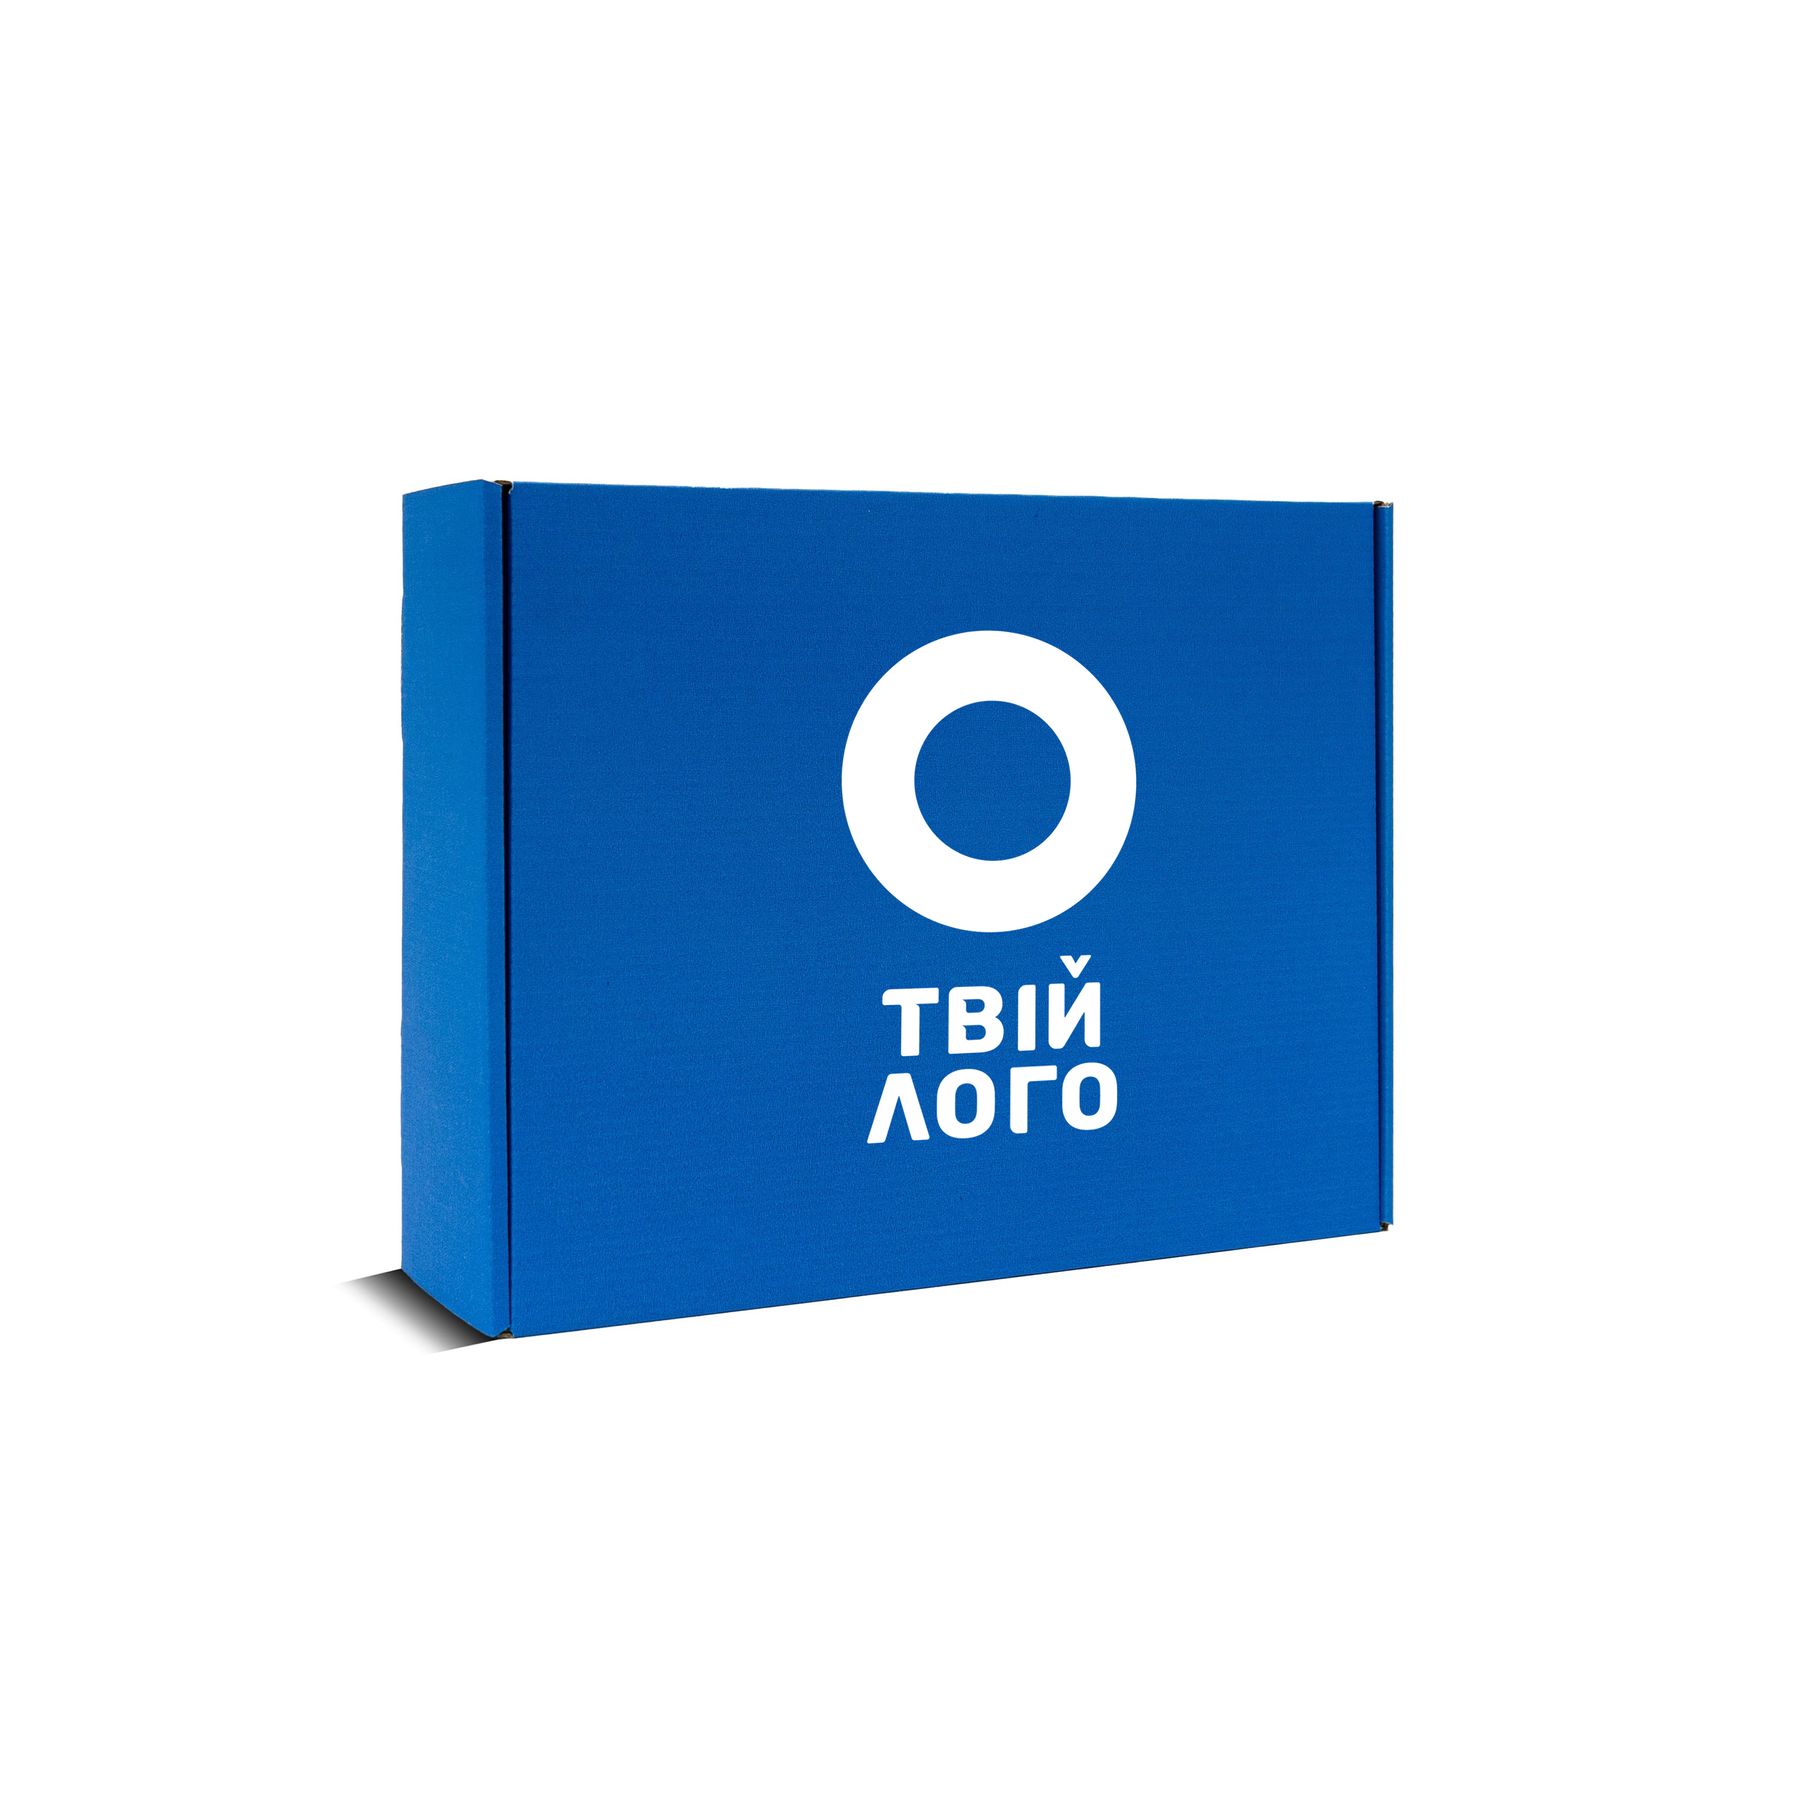 Коробка с логотипом картонная синяя (подарочная) - 30-24-9